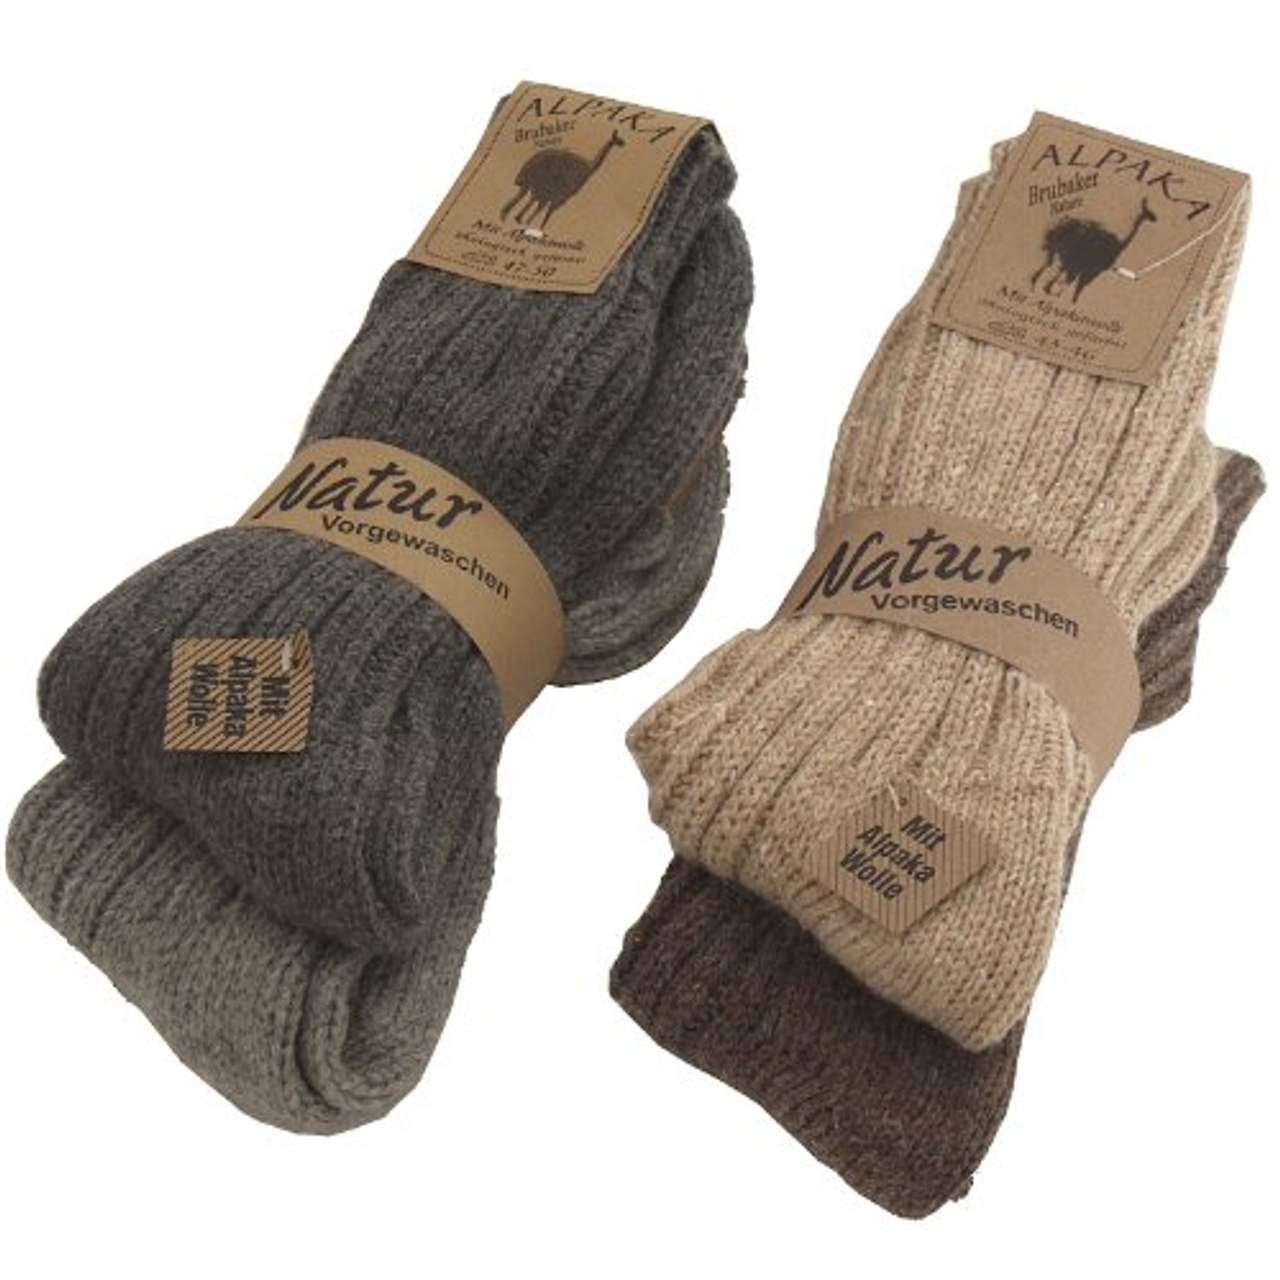 Damen Angora Schafs Woll Socken 6 Paar 30 % Angora 40% Wolle  weich und warm